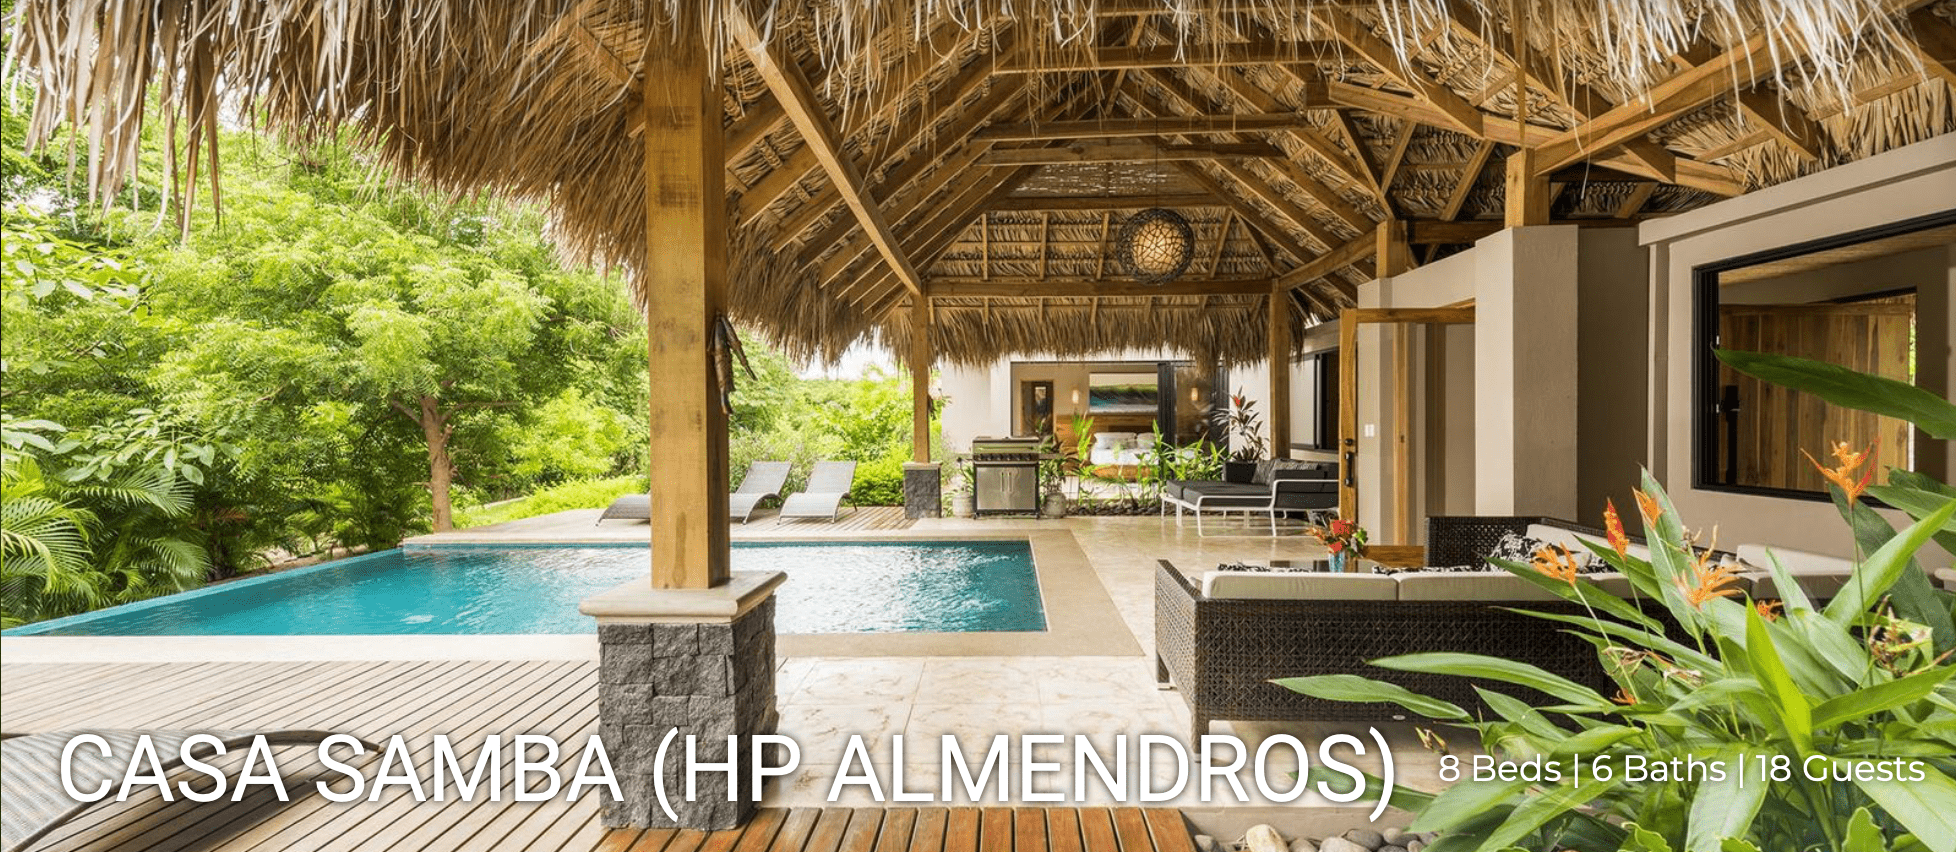 Casa Samba Hacienda Pinilla vacation rental for framily friends